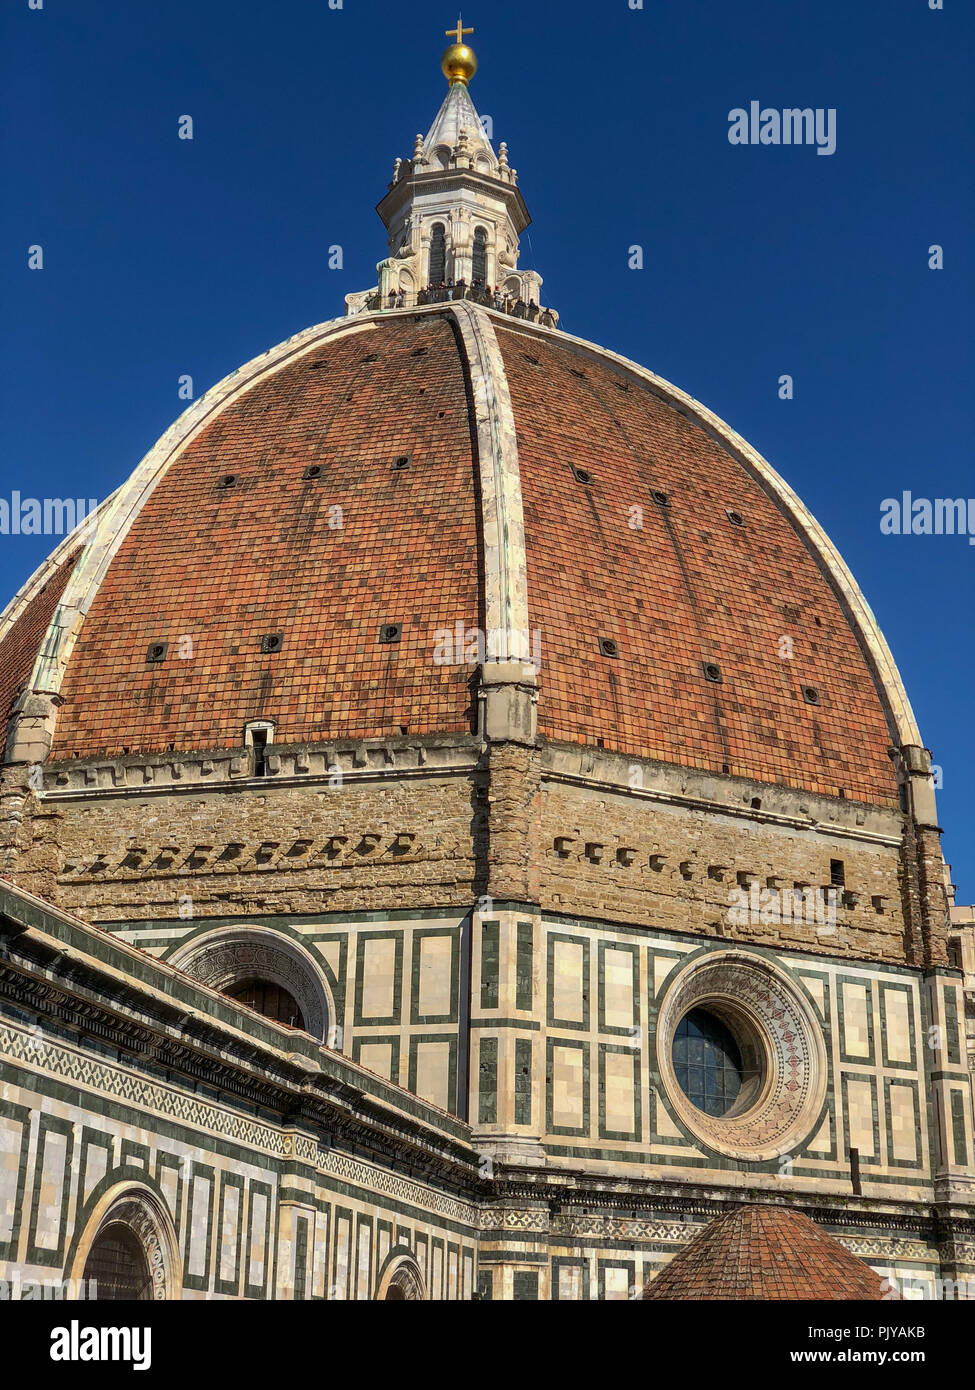 Duomo de Florencia. La Basílica di Santa Maria del Fiore (Basílica de Santa María de las flores), en Florencia, Italia. Foto de stock